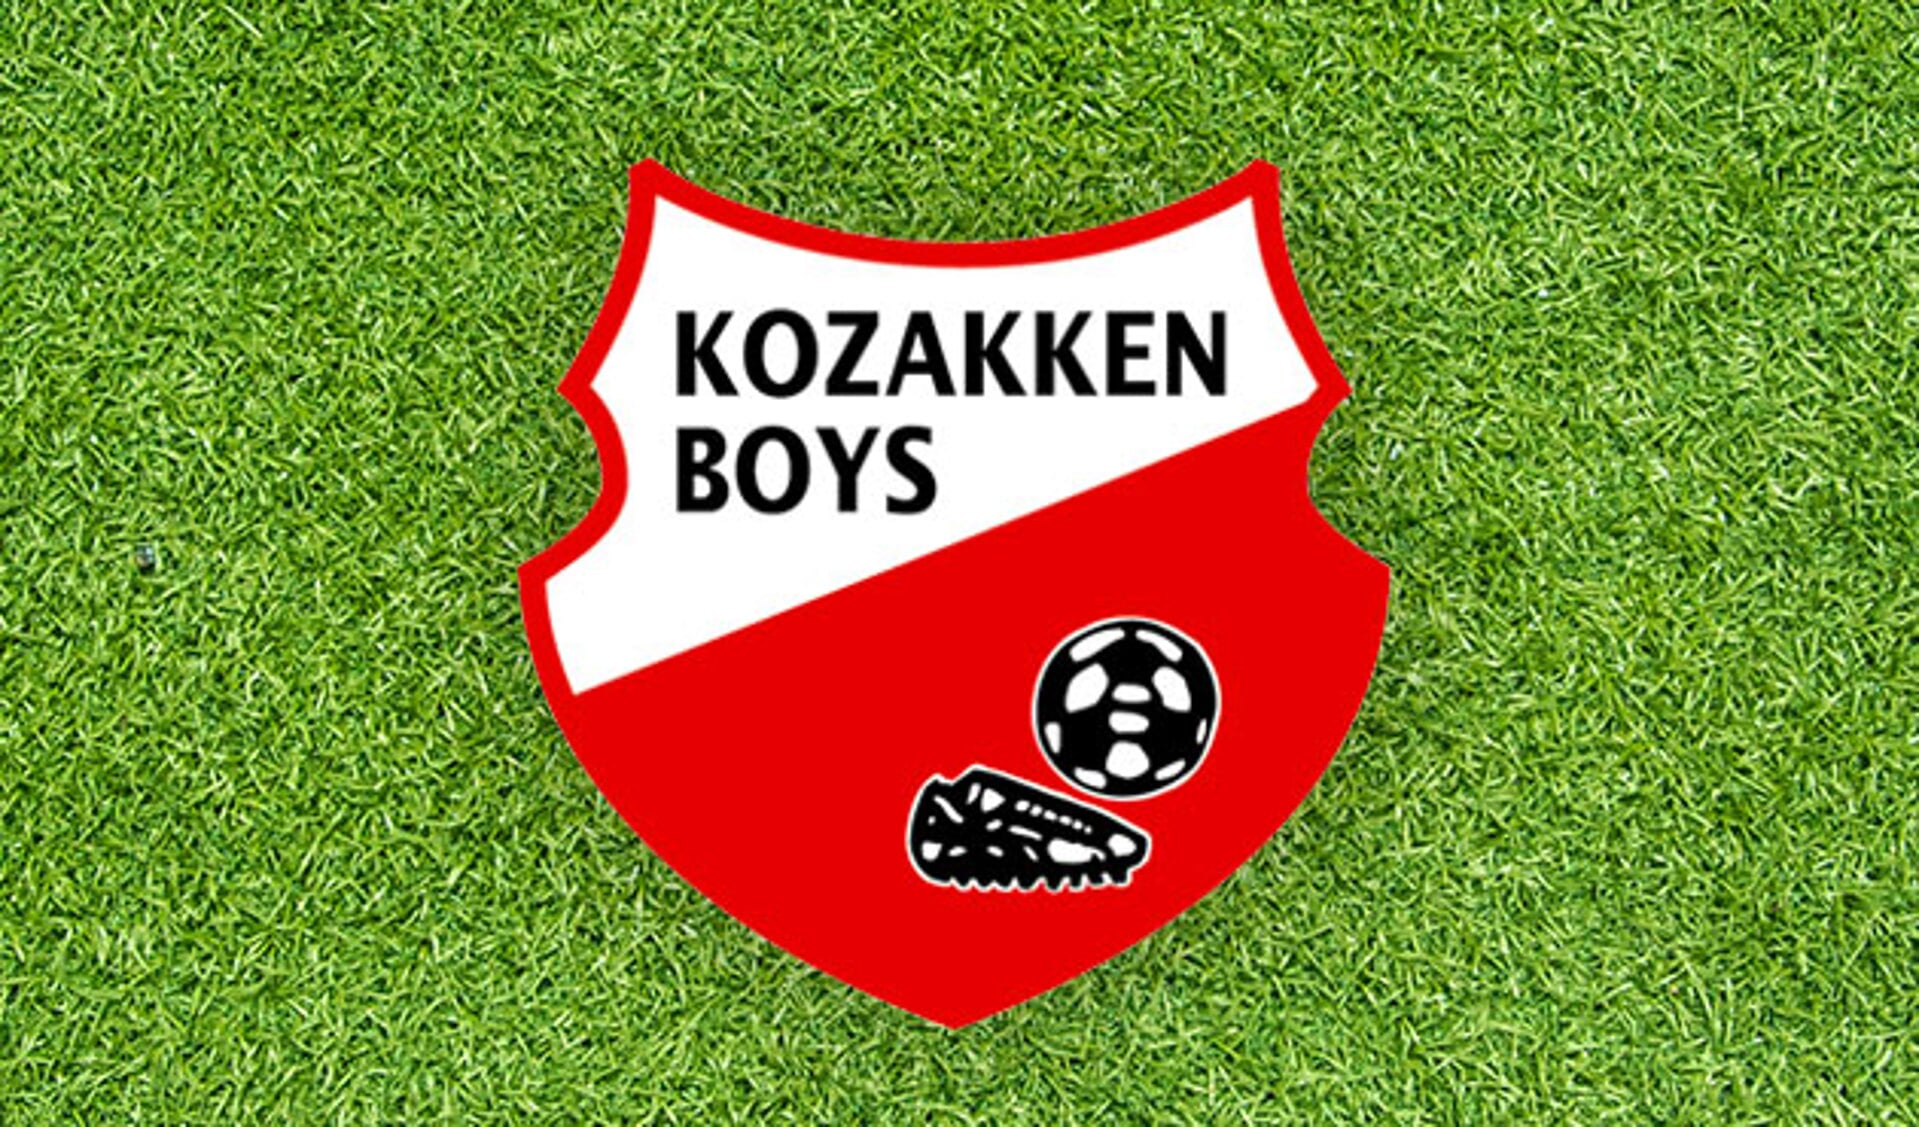 Voorbeschouwing Kozakken Boys-Helmond Sport met Buijs en Van Nuland